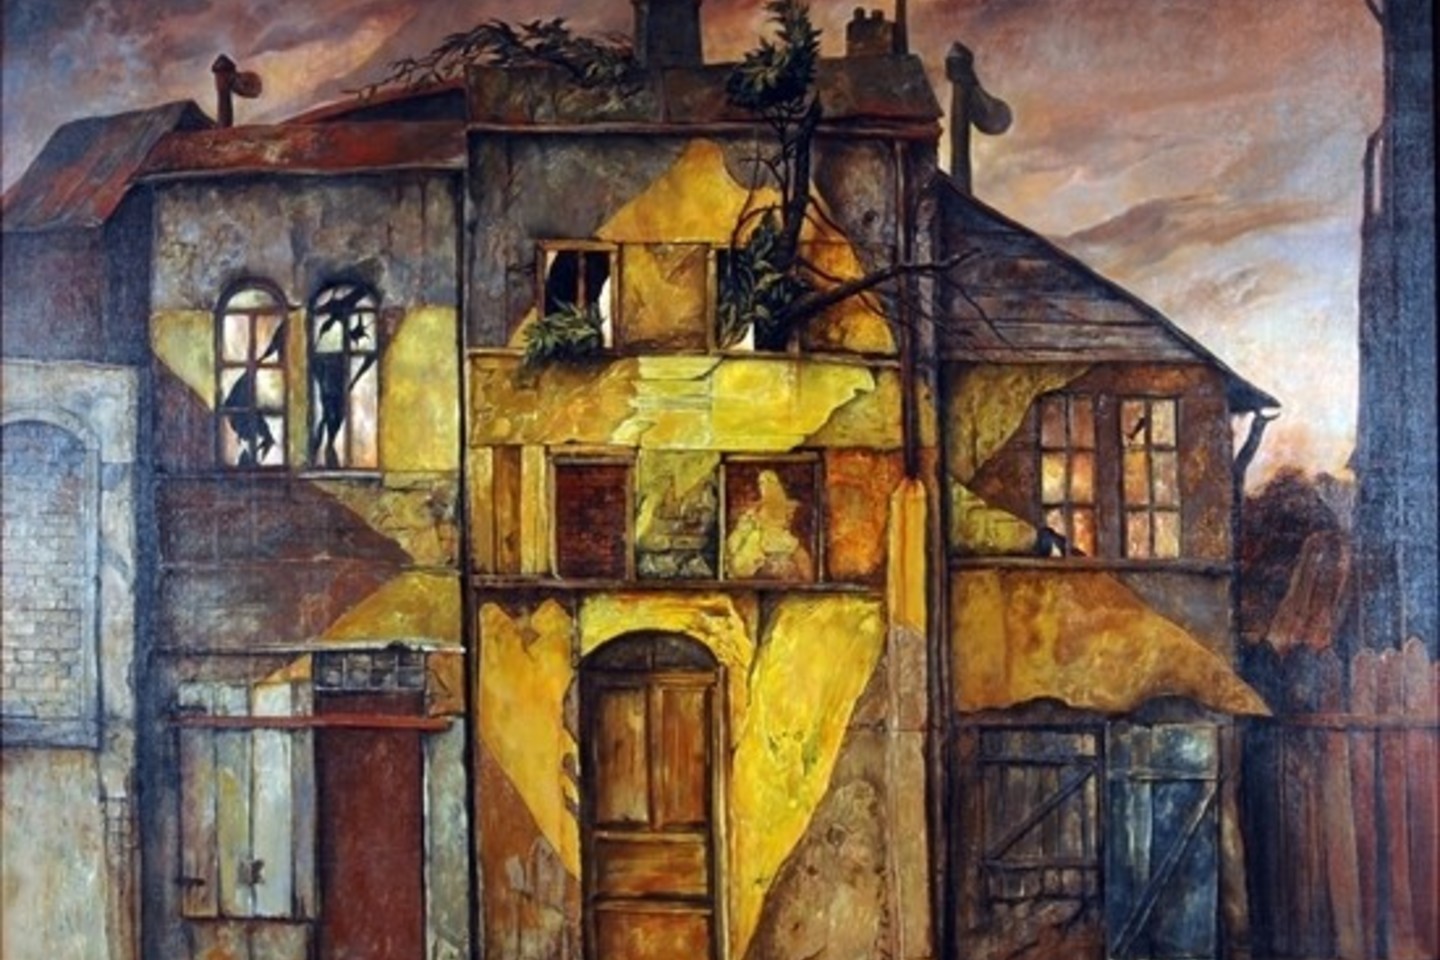  Samuelio Bako kūriniai Vilniuje rado namus.<br> Tolerancijos centro nuotr.